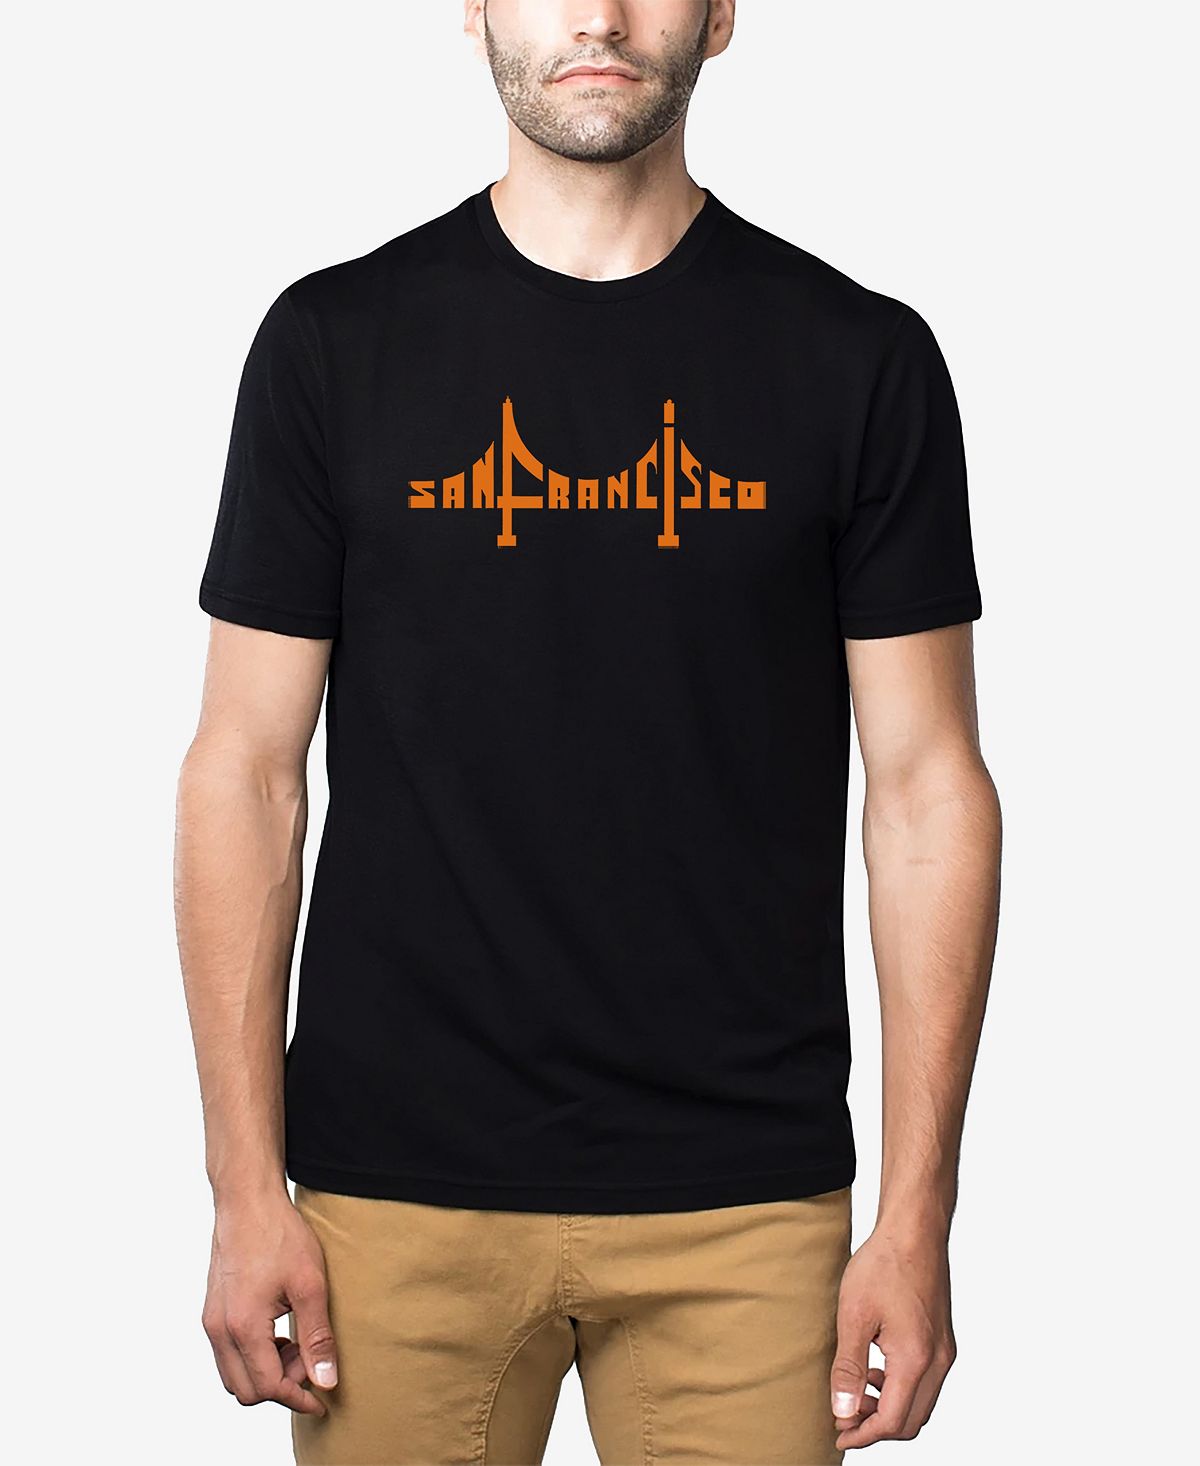 Мужская футболка премиум-класса word art с изображением моста сан-франциско LA Pop Art, черный пазл сан франциско мост золотые ворота